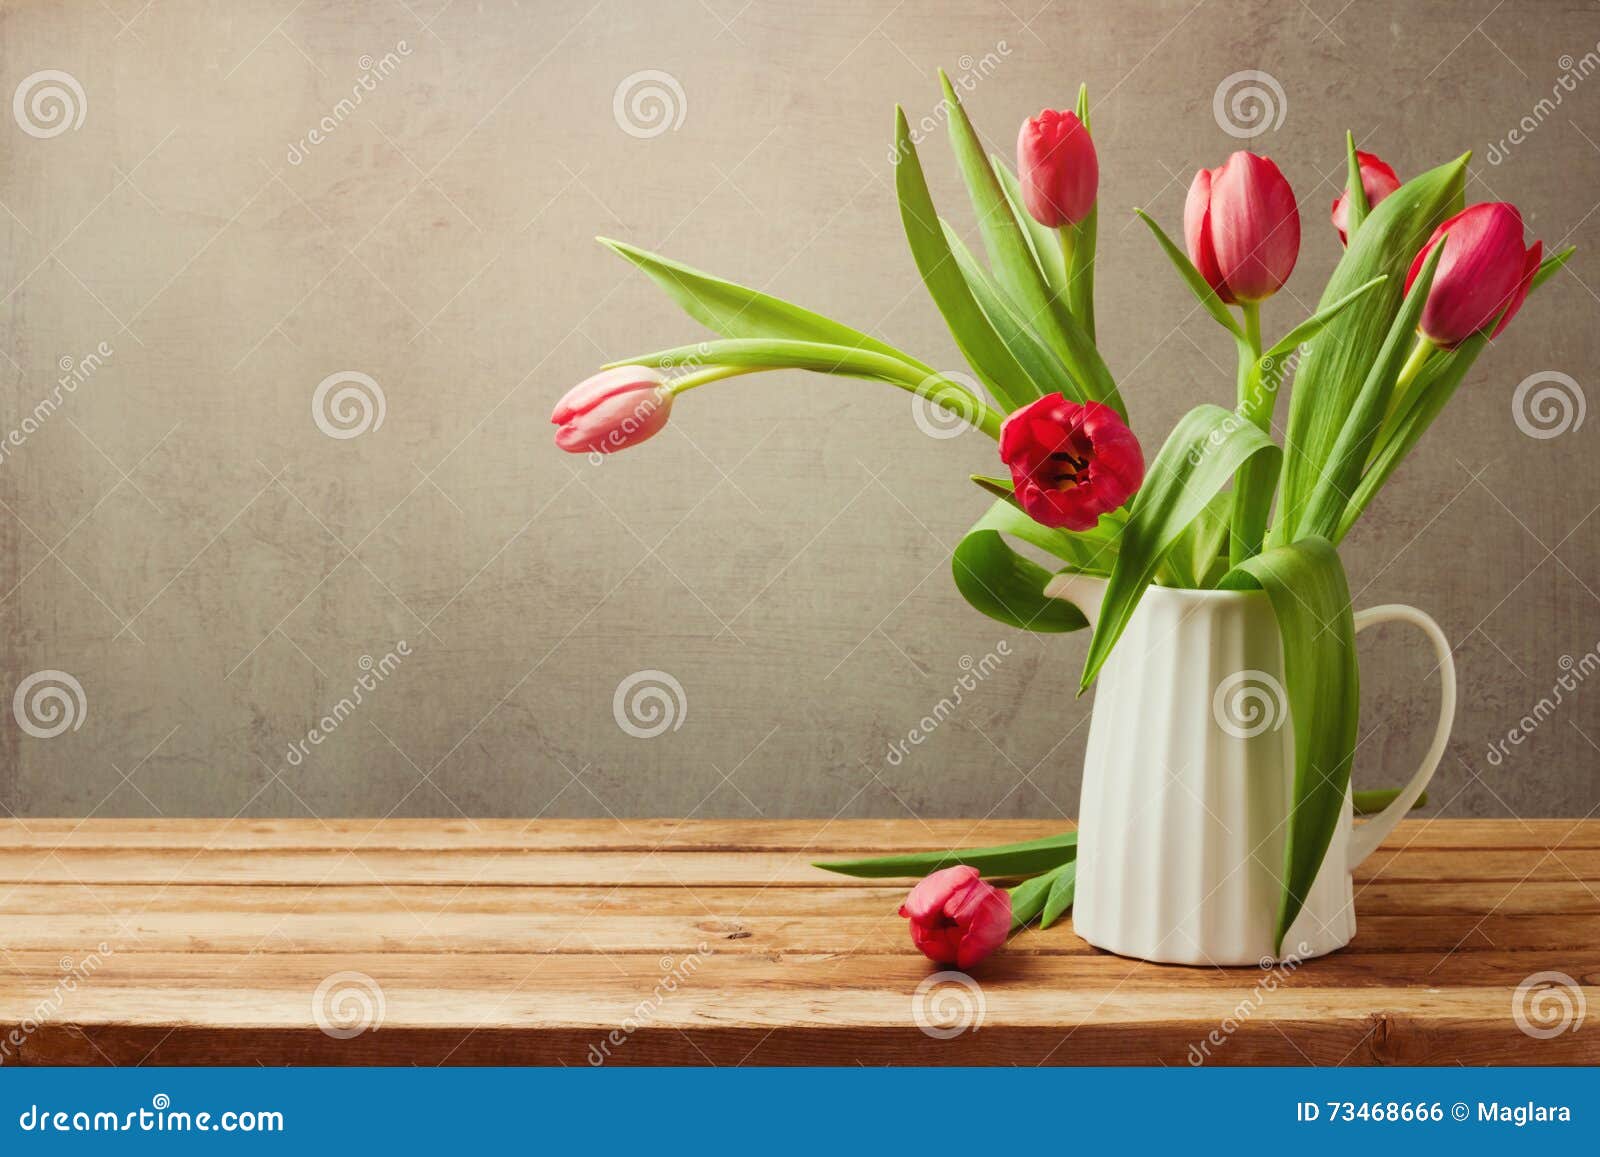 Fiori Del Tulipano Per La Celebrazione Di Compleanno Tulipani in